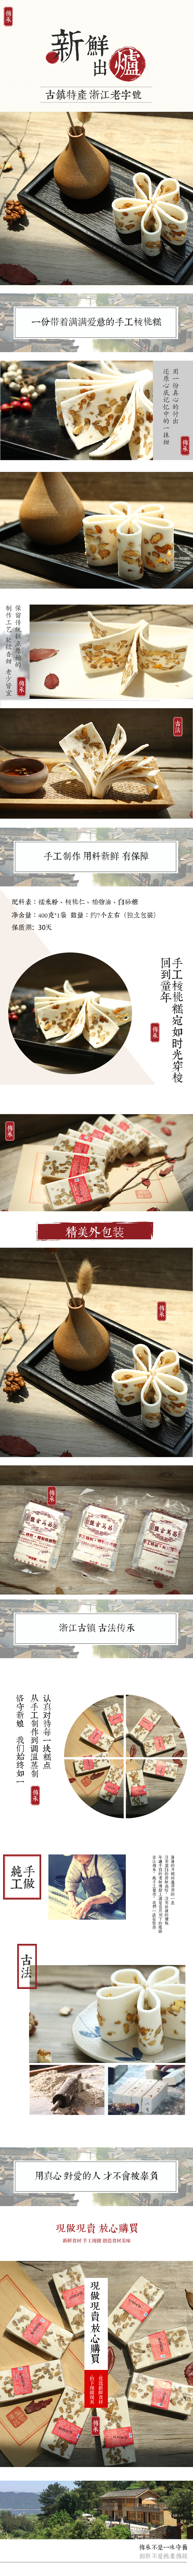 淘宝美工清欢古典中国风糕点食品详情页产品描述页作品